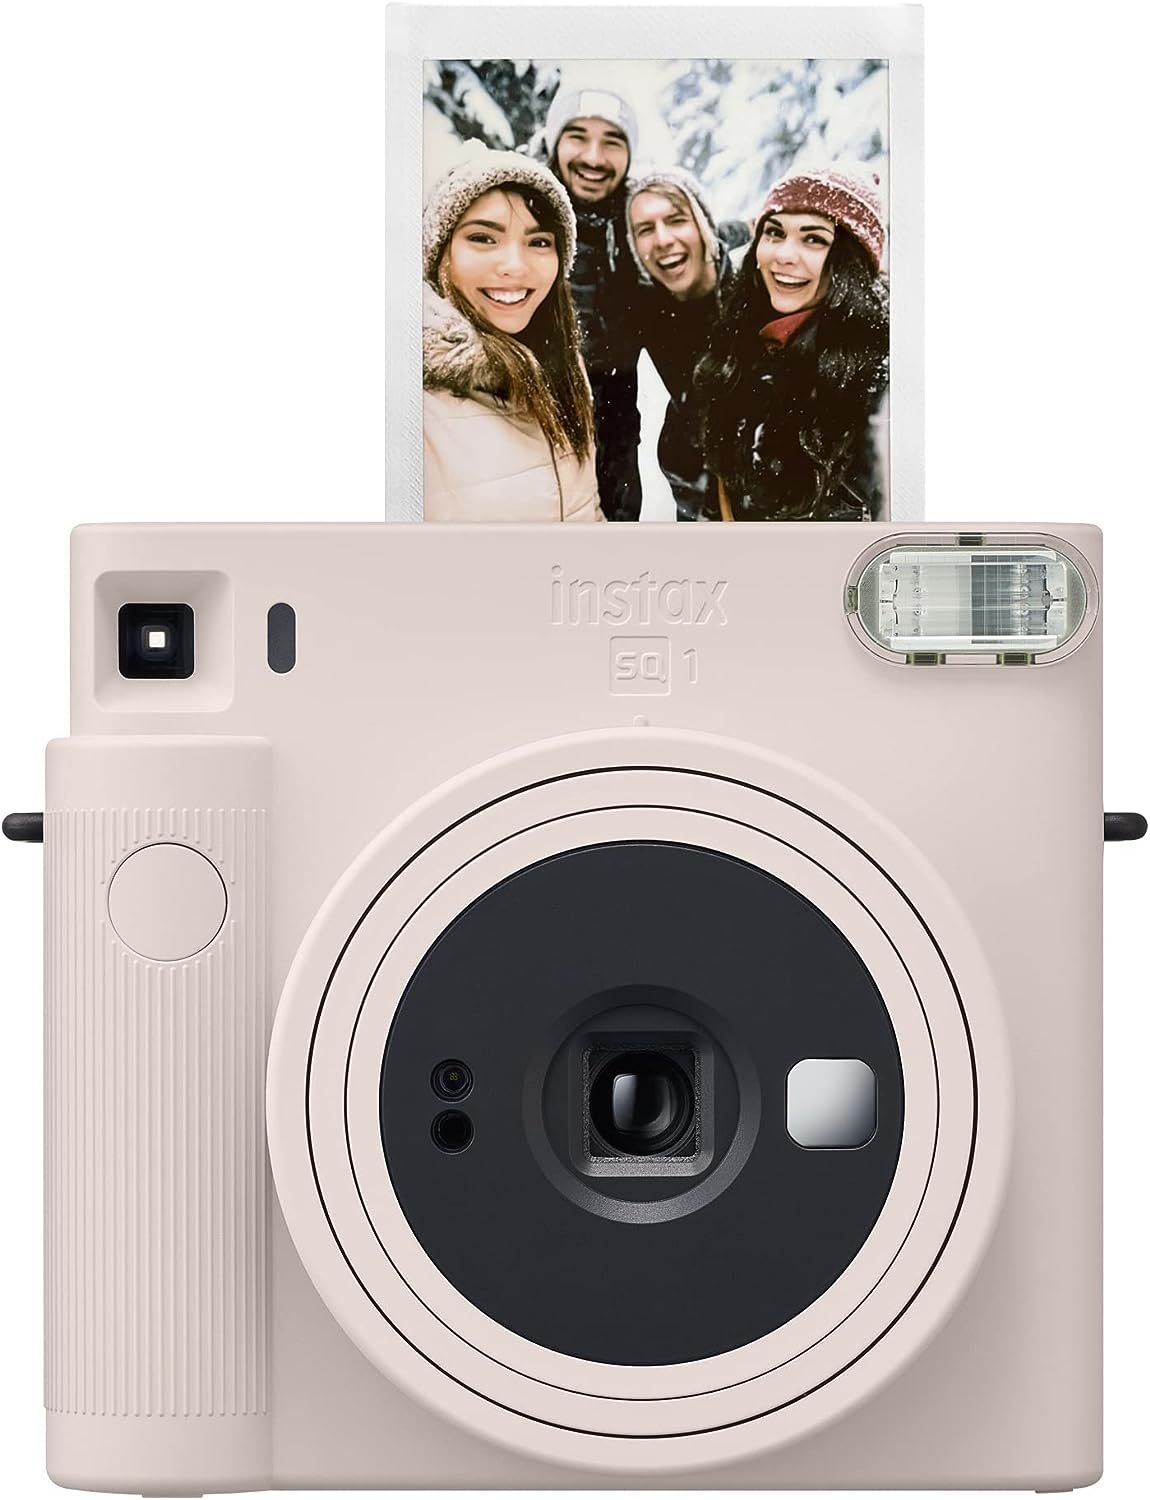 FUJIFILM Instax Square SQ1 Instant Camera - Chalk White | Amazon (US)